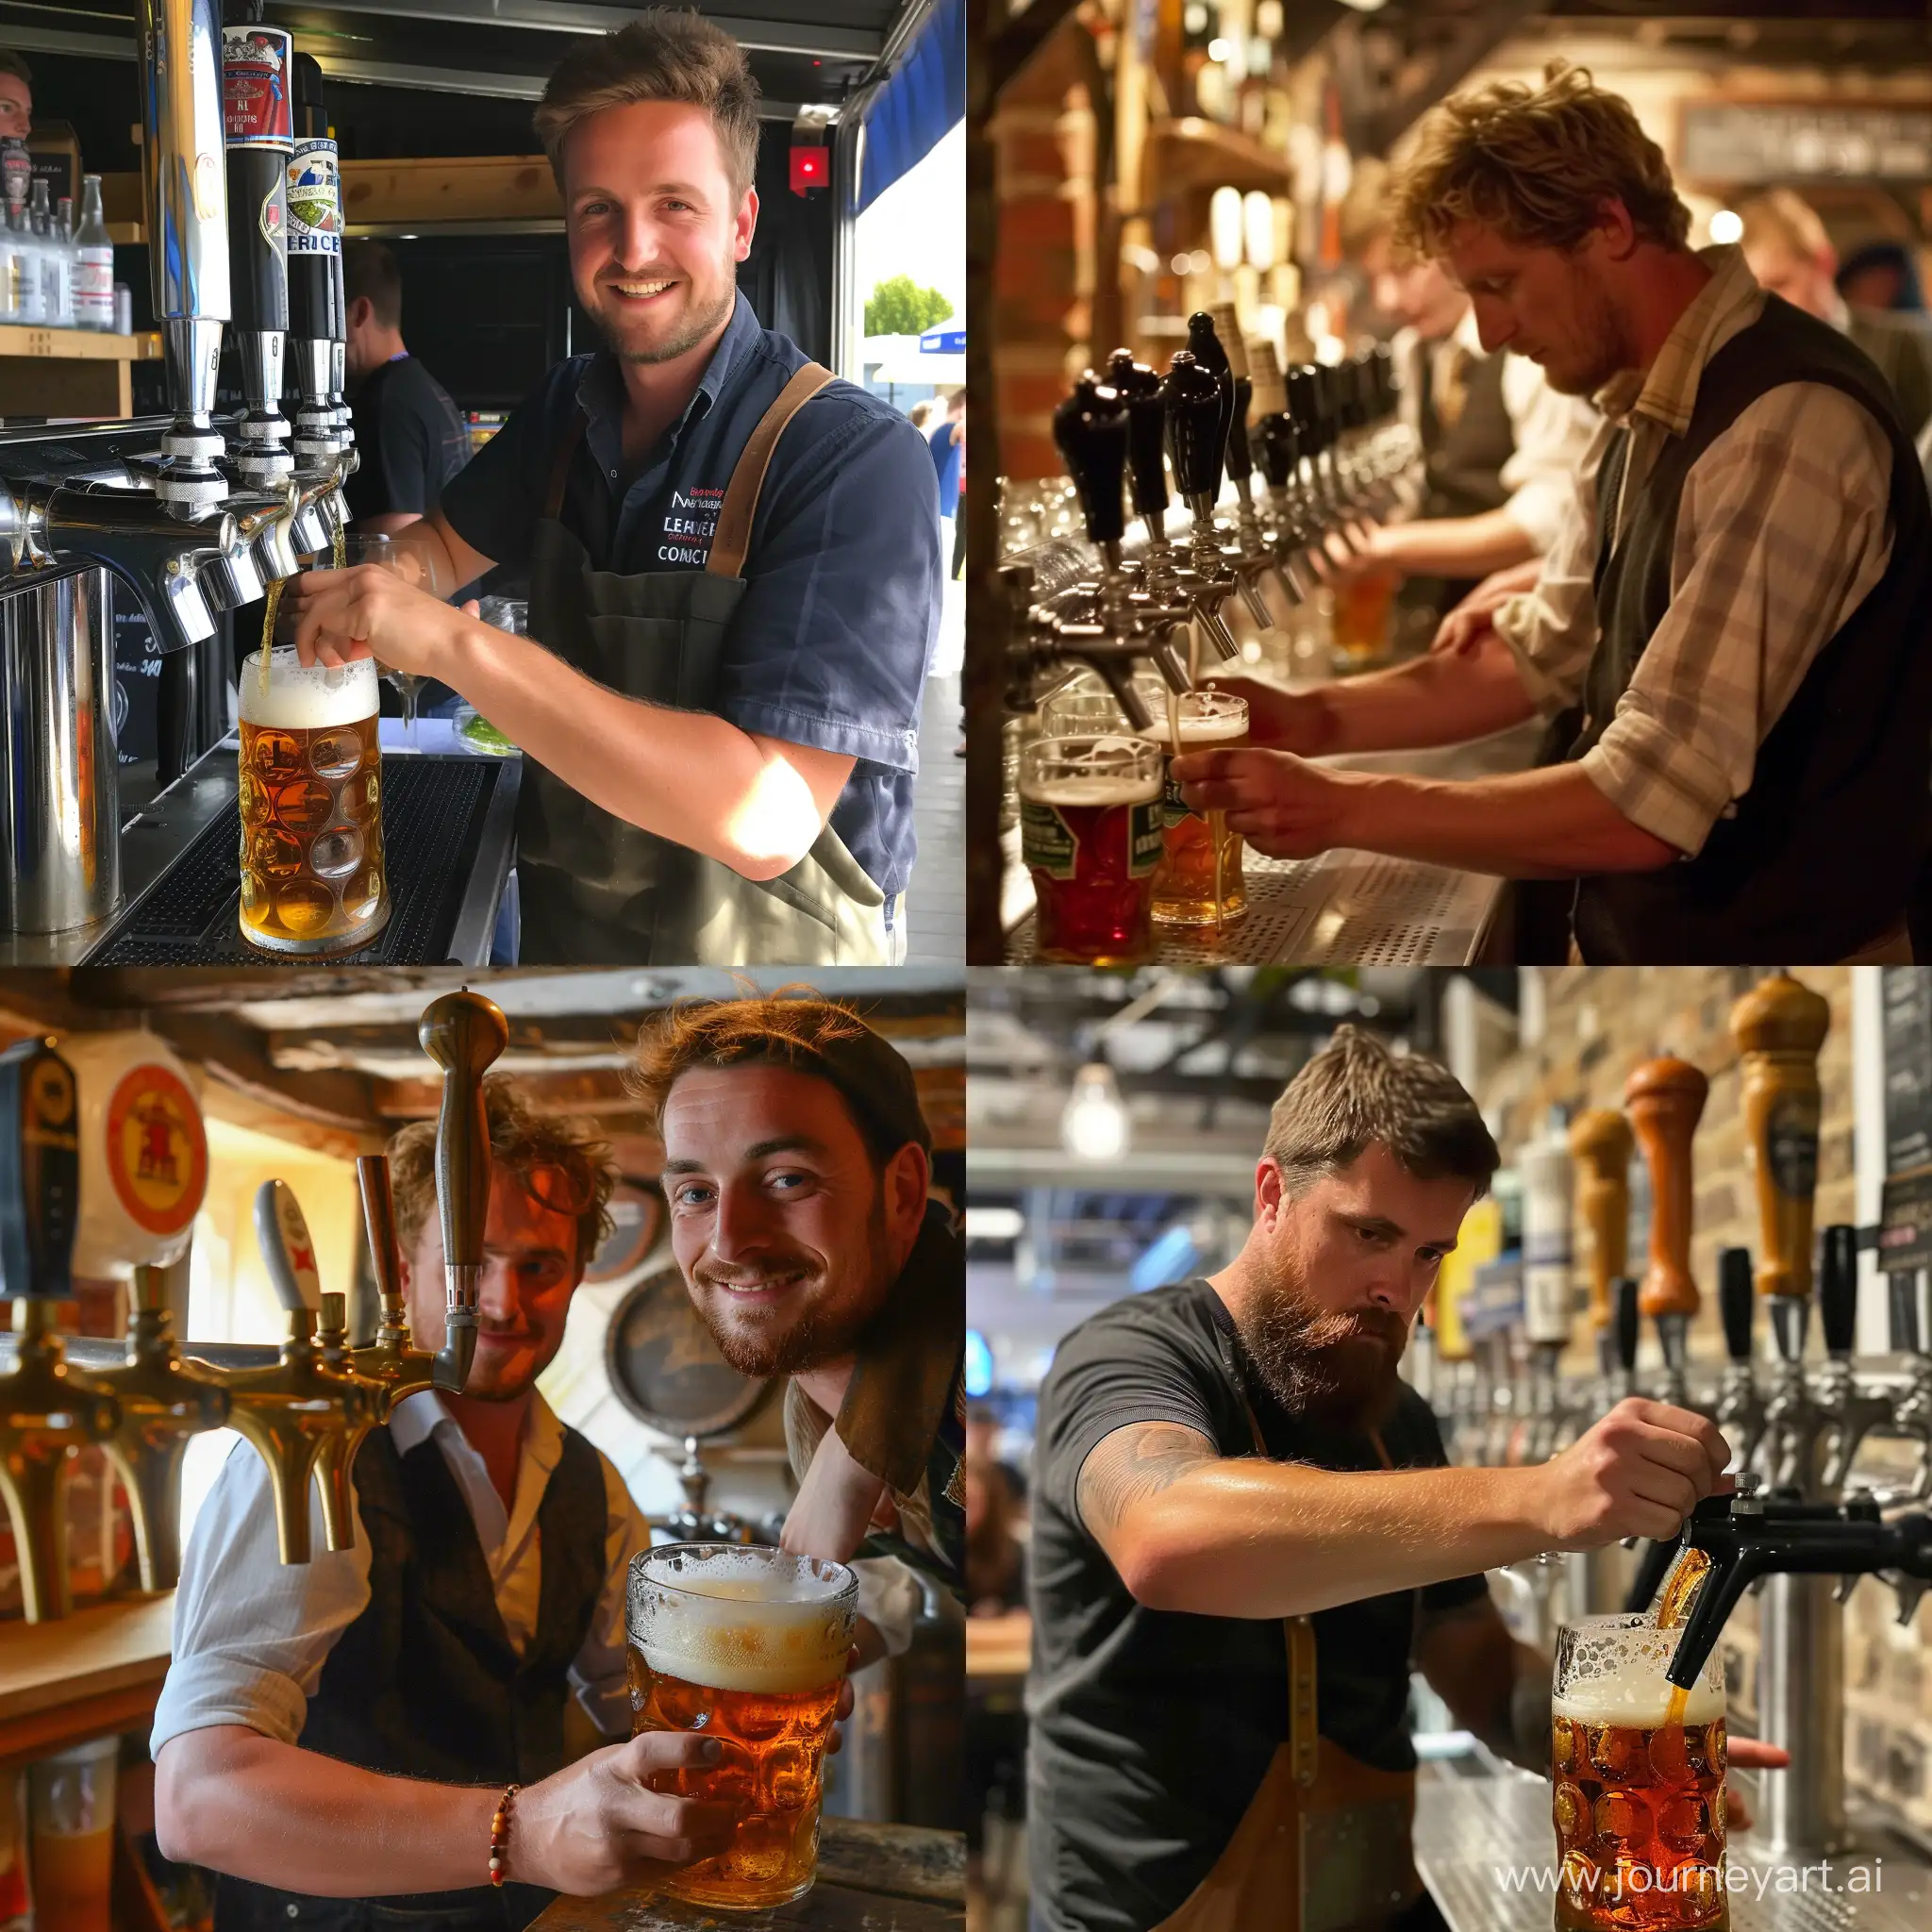 Kentish-Man-Pouring-8-Liters-of-Beer